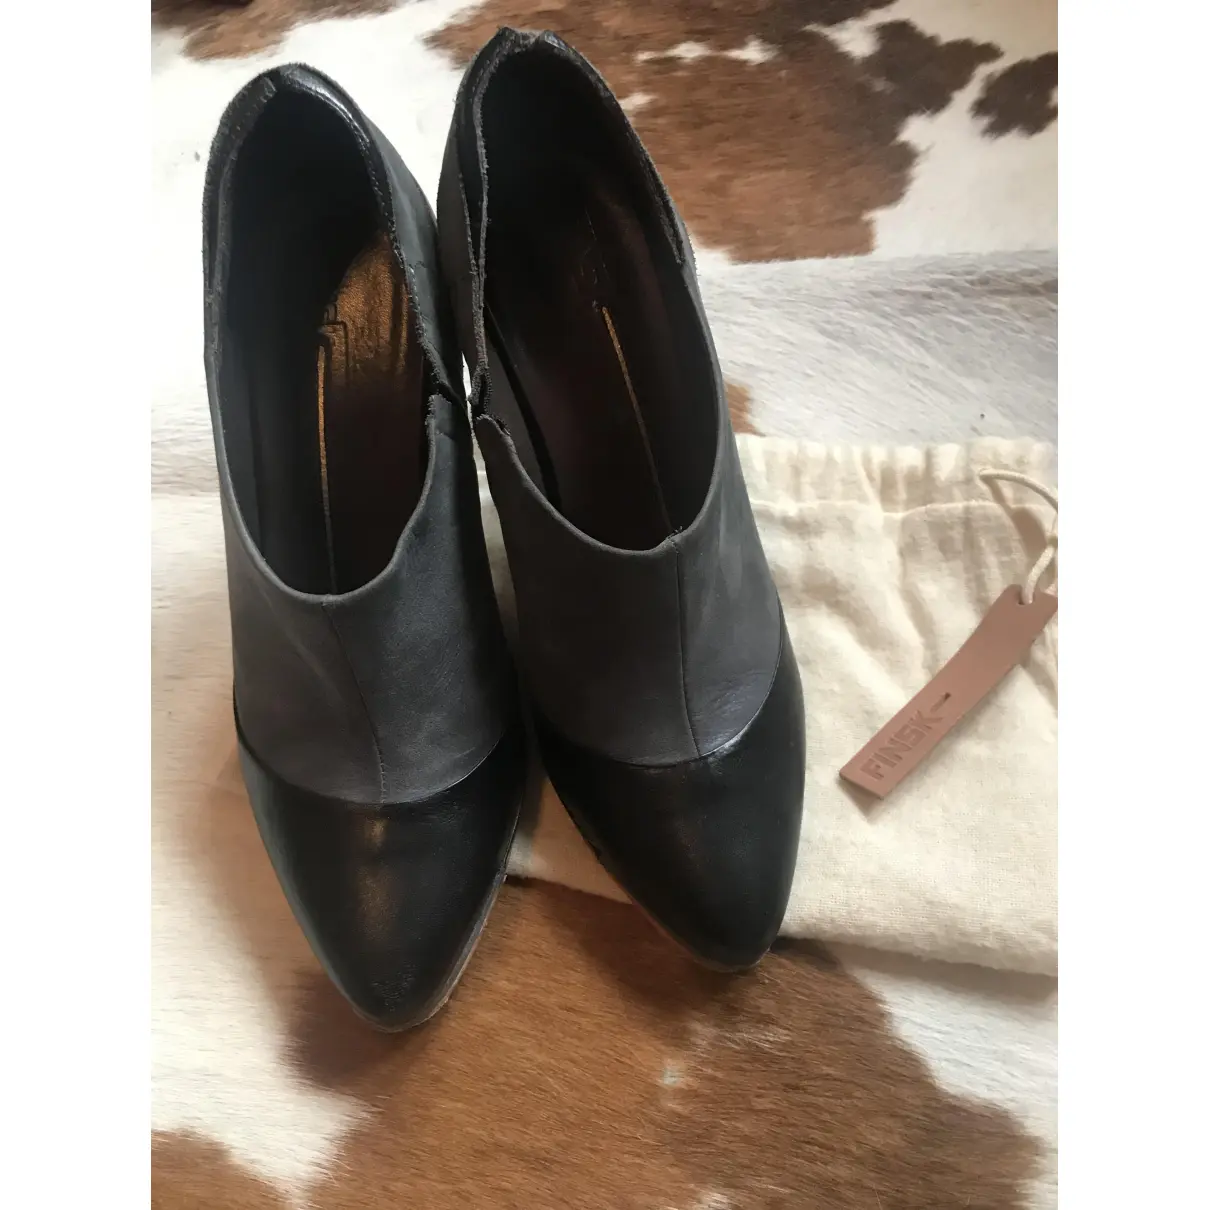 Buy Finsk Leather heels online